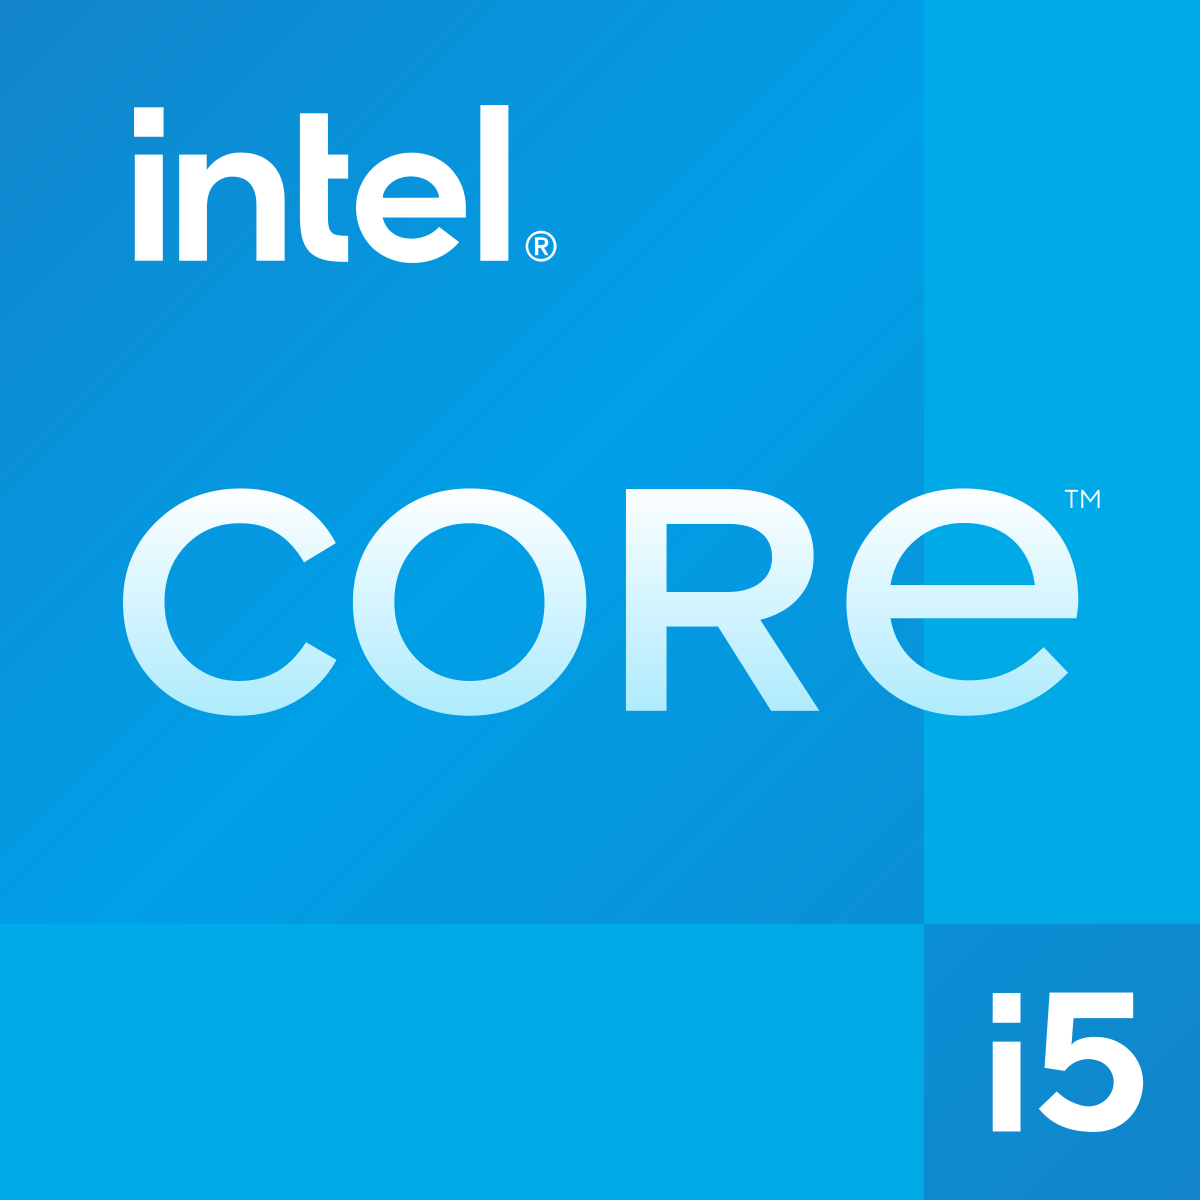 Intel Core i5 - Wikipedia